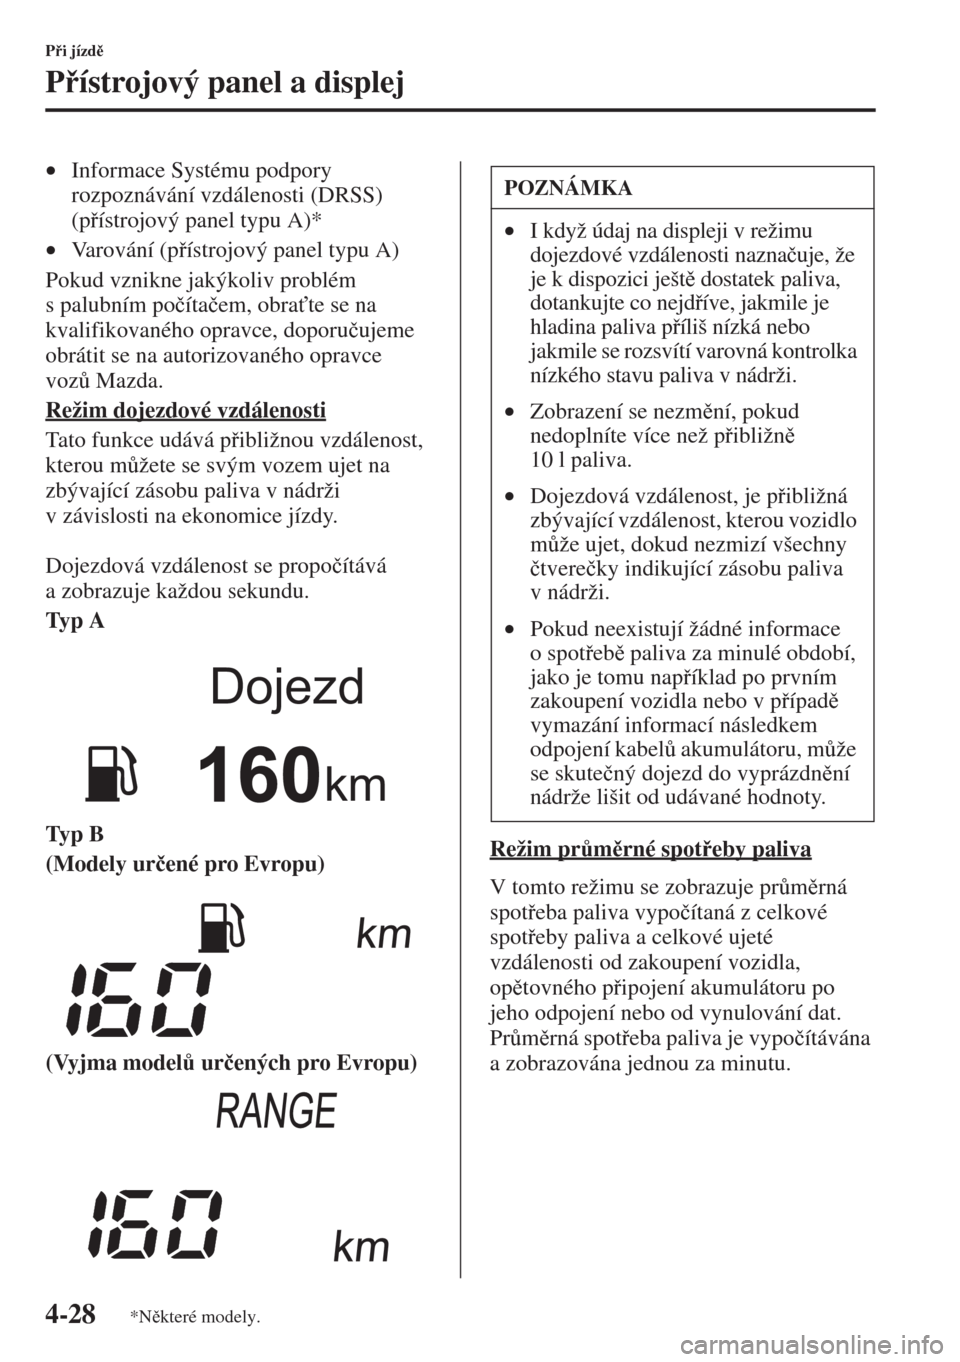 MAZDA MODEL CX-5 2015  Návod k obsluze (in Czech) 4-28
Pi jízd
Pístrojový panel a displej
•Informace Systému podpory 
rozpoznávání vzdálenosti (DRSS) 
(pístrojový panel typu A)*
•Varování (pístrojový panel typu A)
Pokud vz